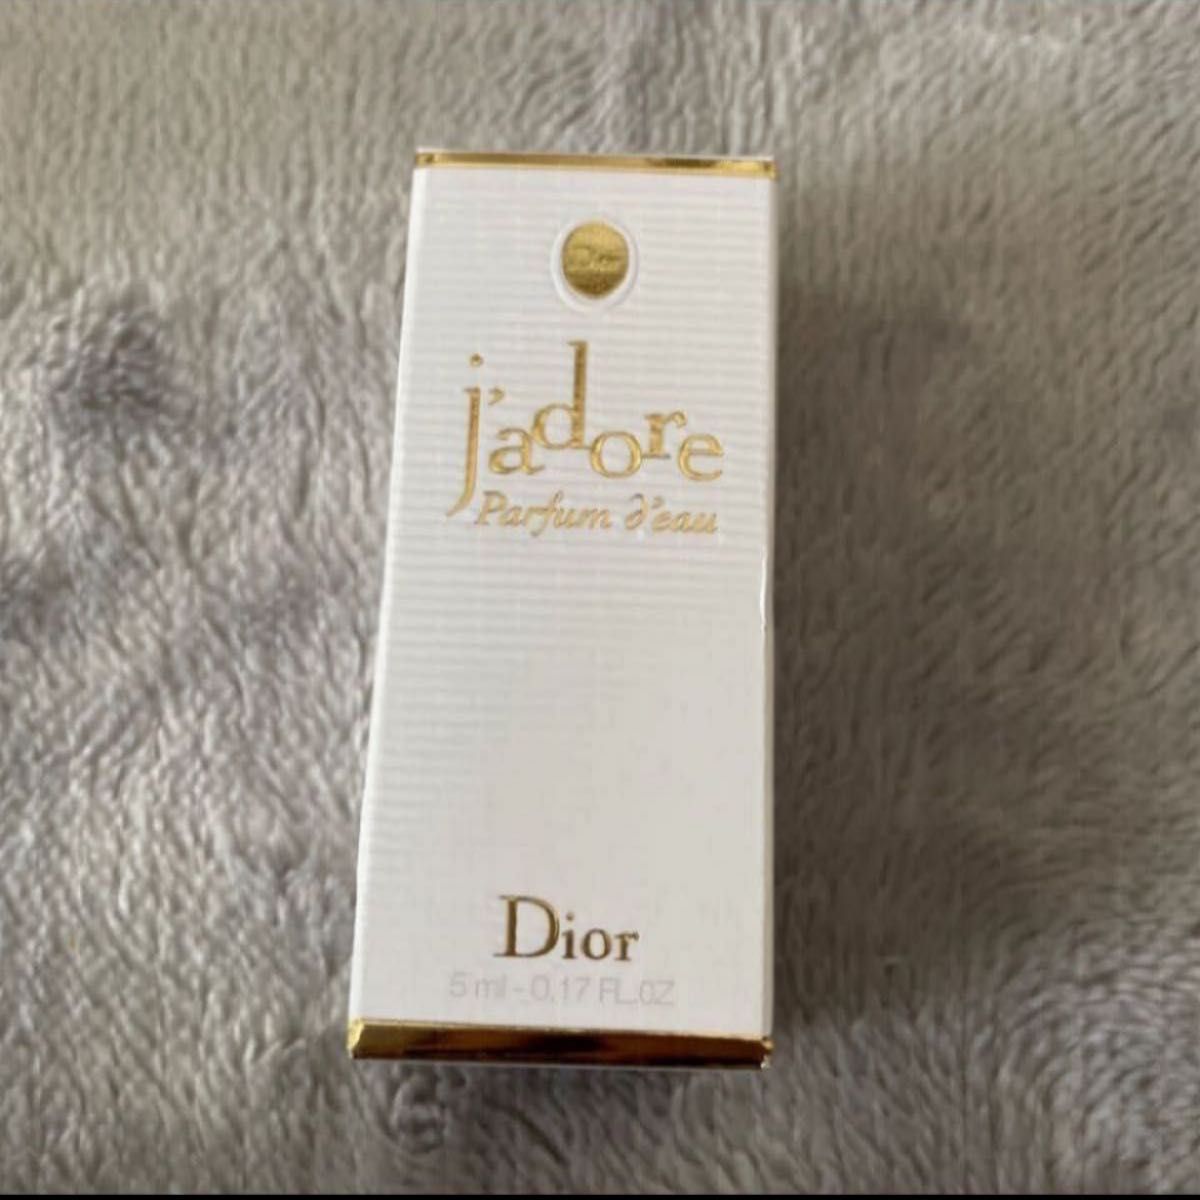 ディオール ジャドール パルファン ドー オードパルファム 5ml  Dior jadore ミニ香水 巾着付き